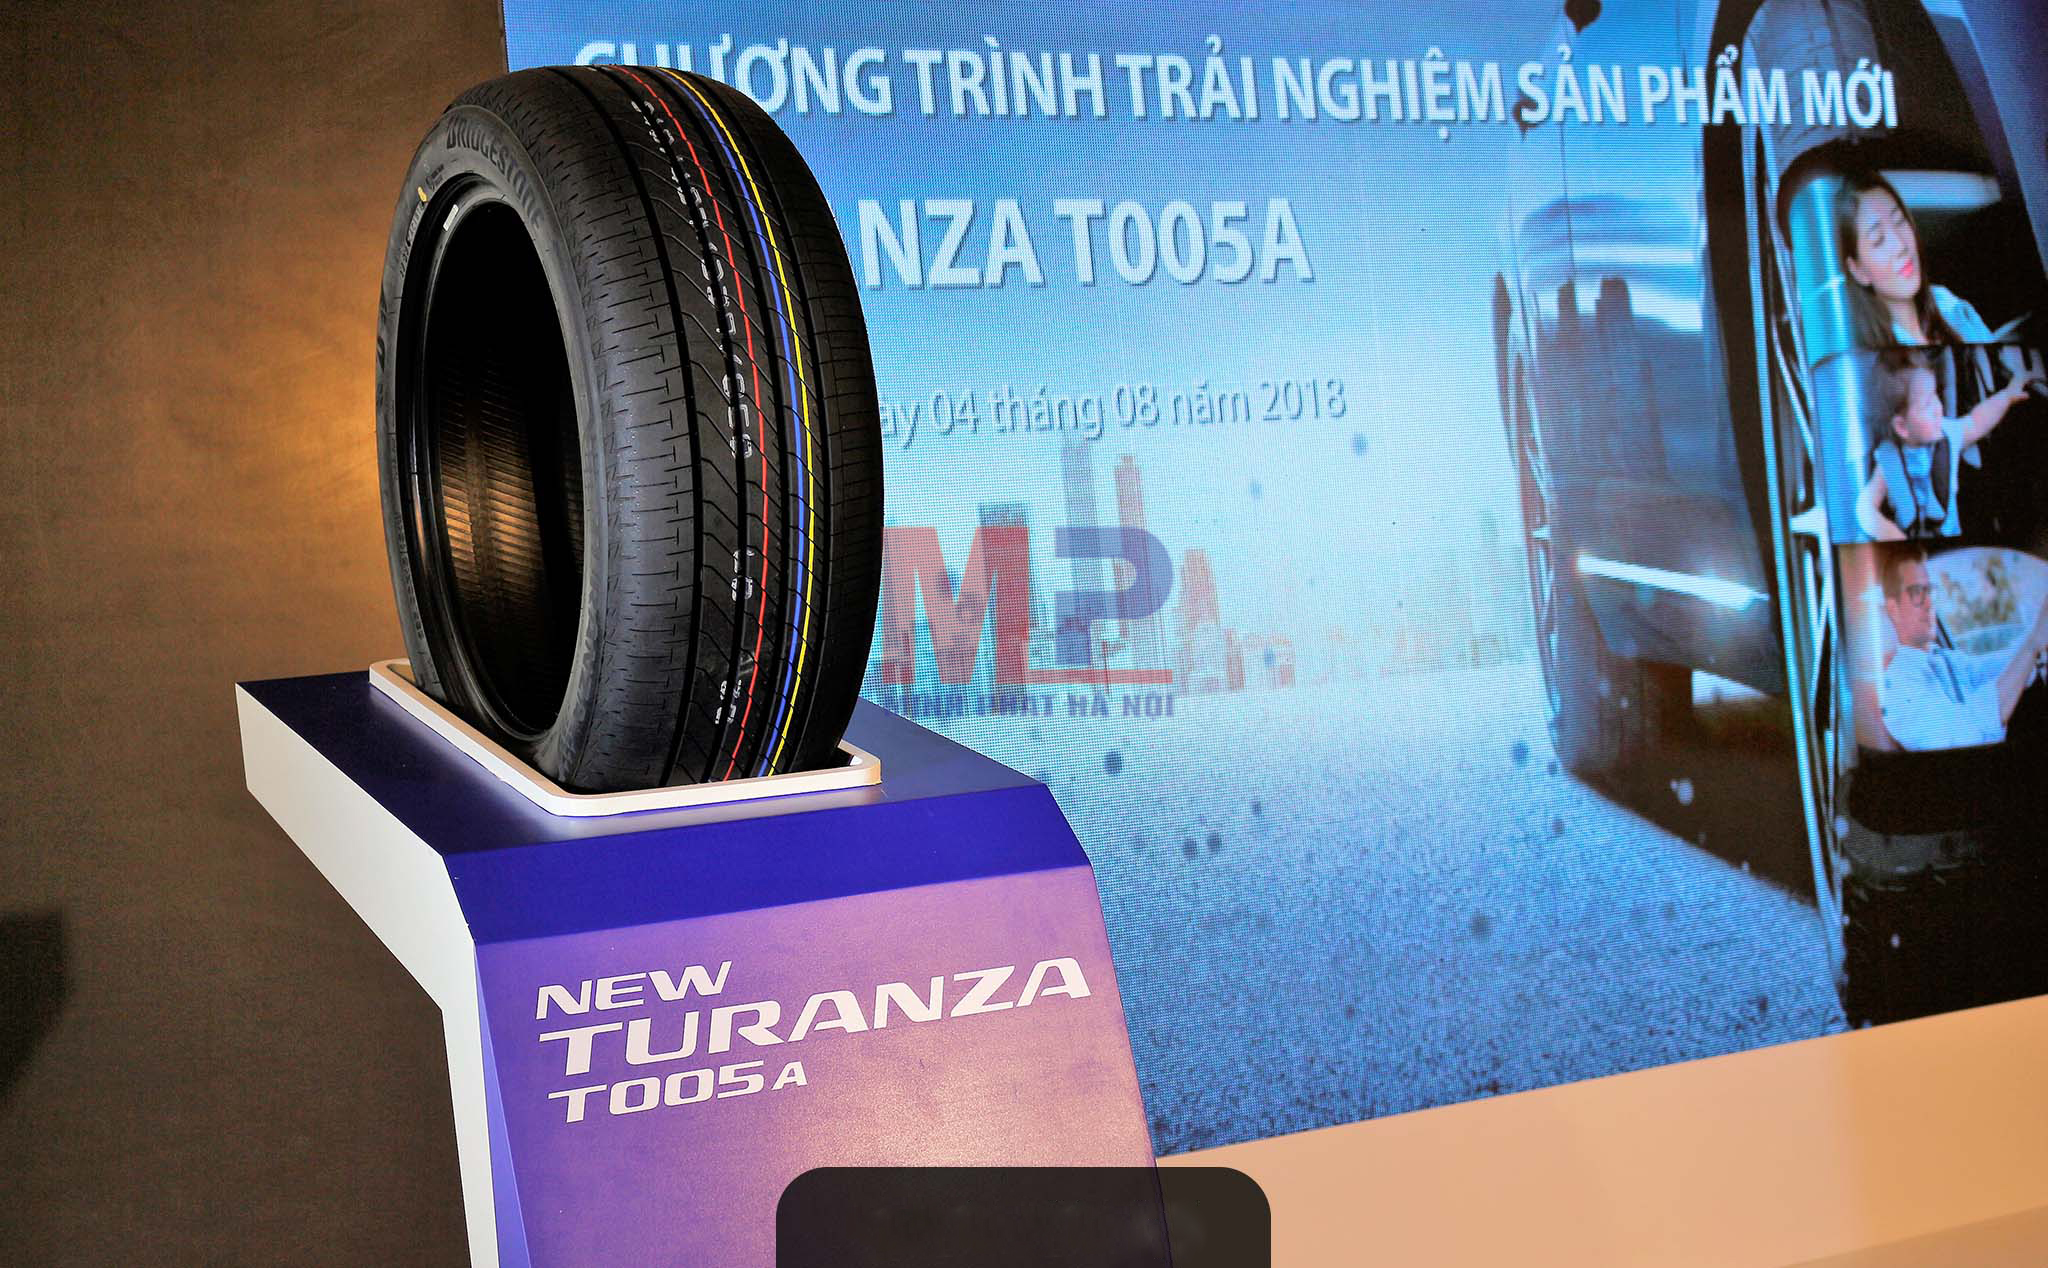 Lốp xe Turanza T005a được người dùng đánh giá là tạo nên cảm giác vô cùng êm ái